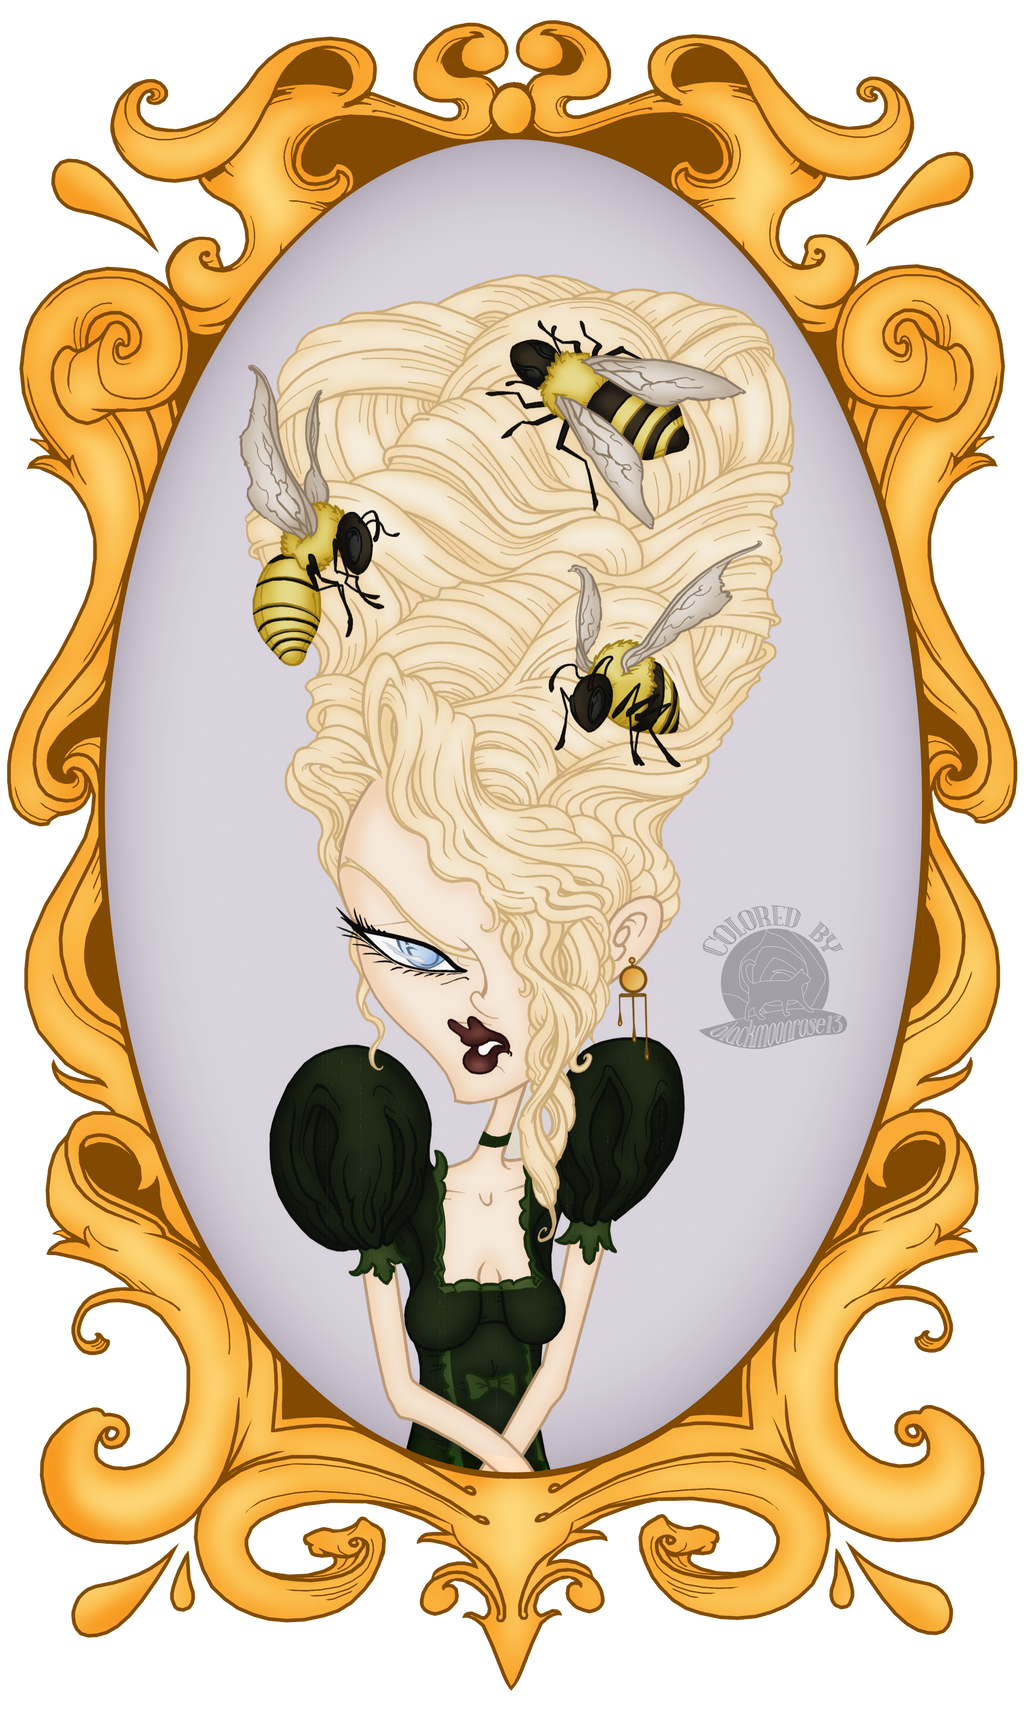 Marie the Queen Bee